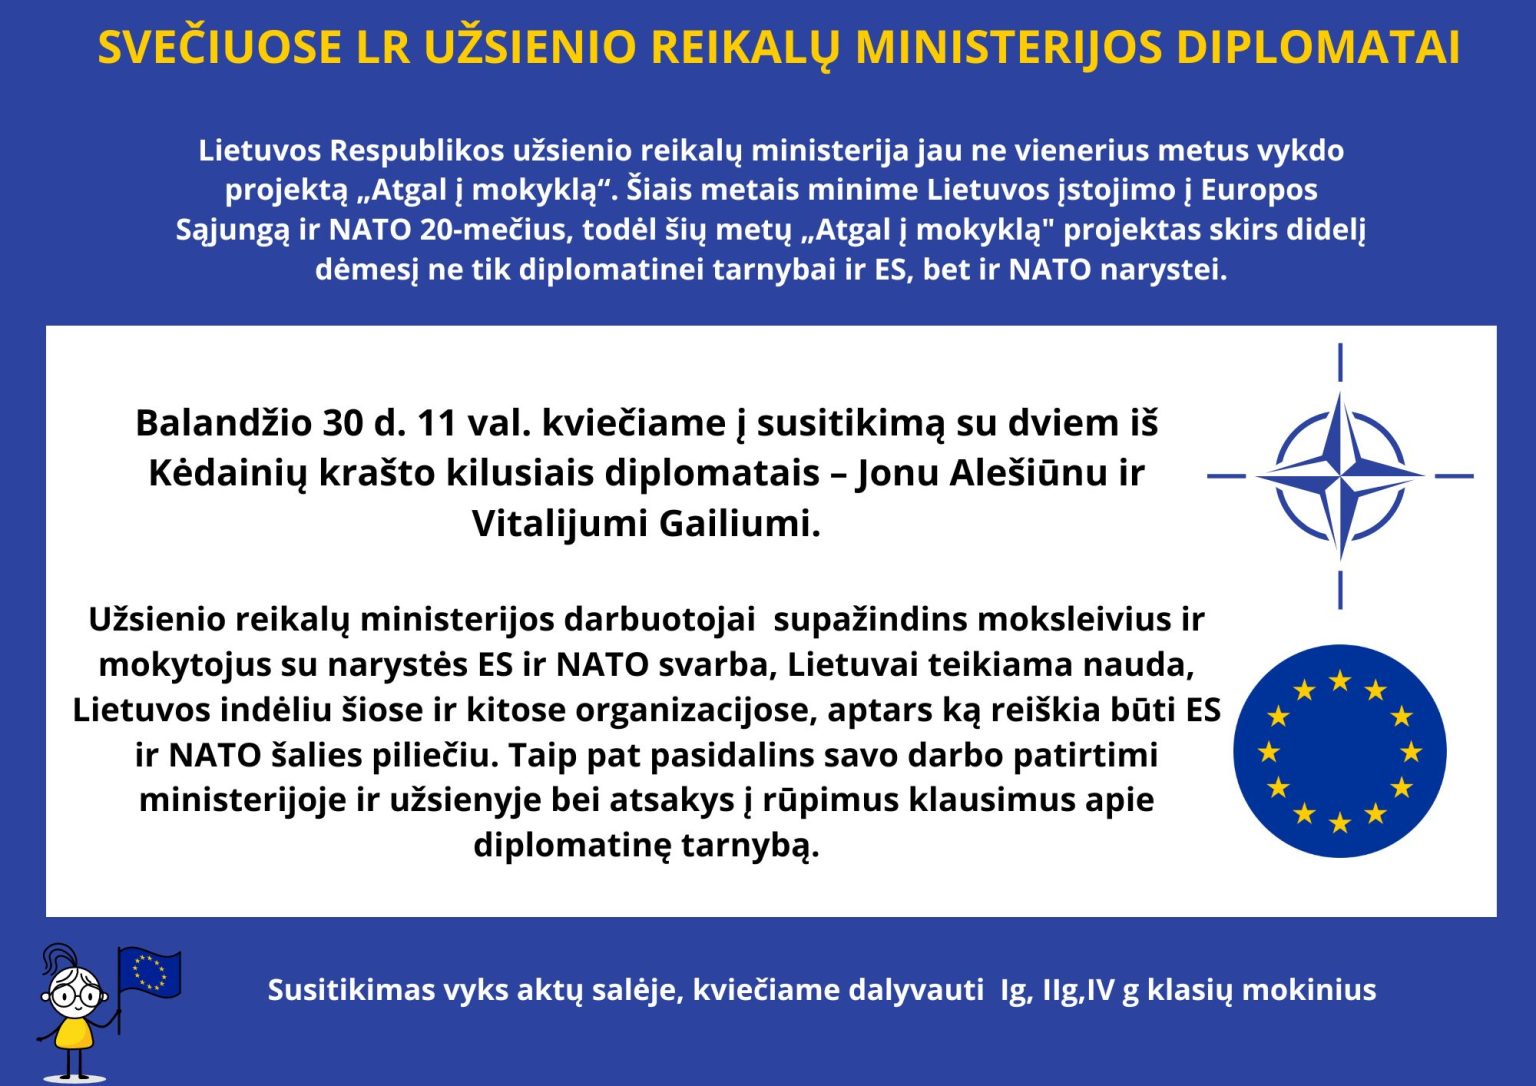 Svečiuosis Lietuvos Respublikos užsienio reikalų ministerijos diplomatai